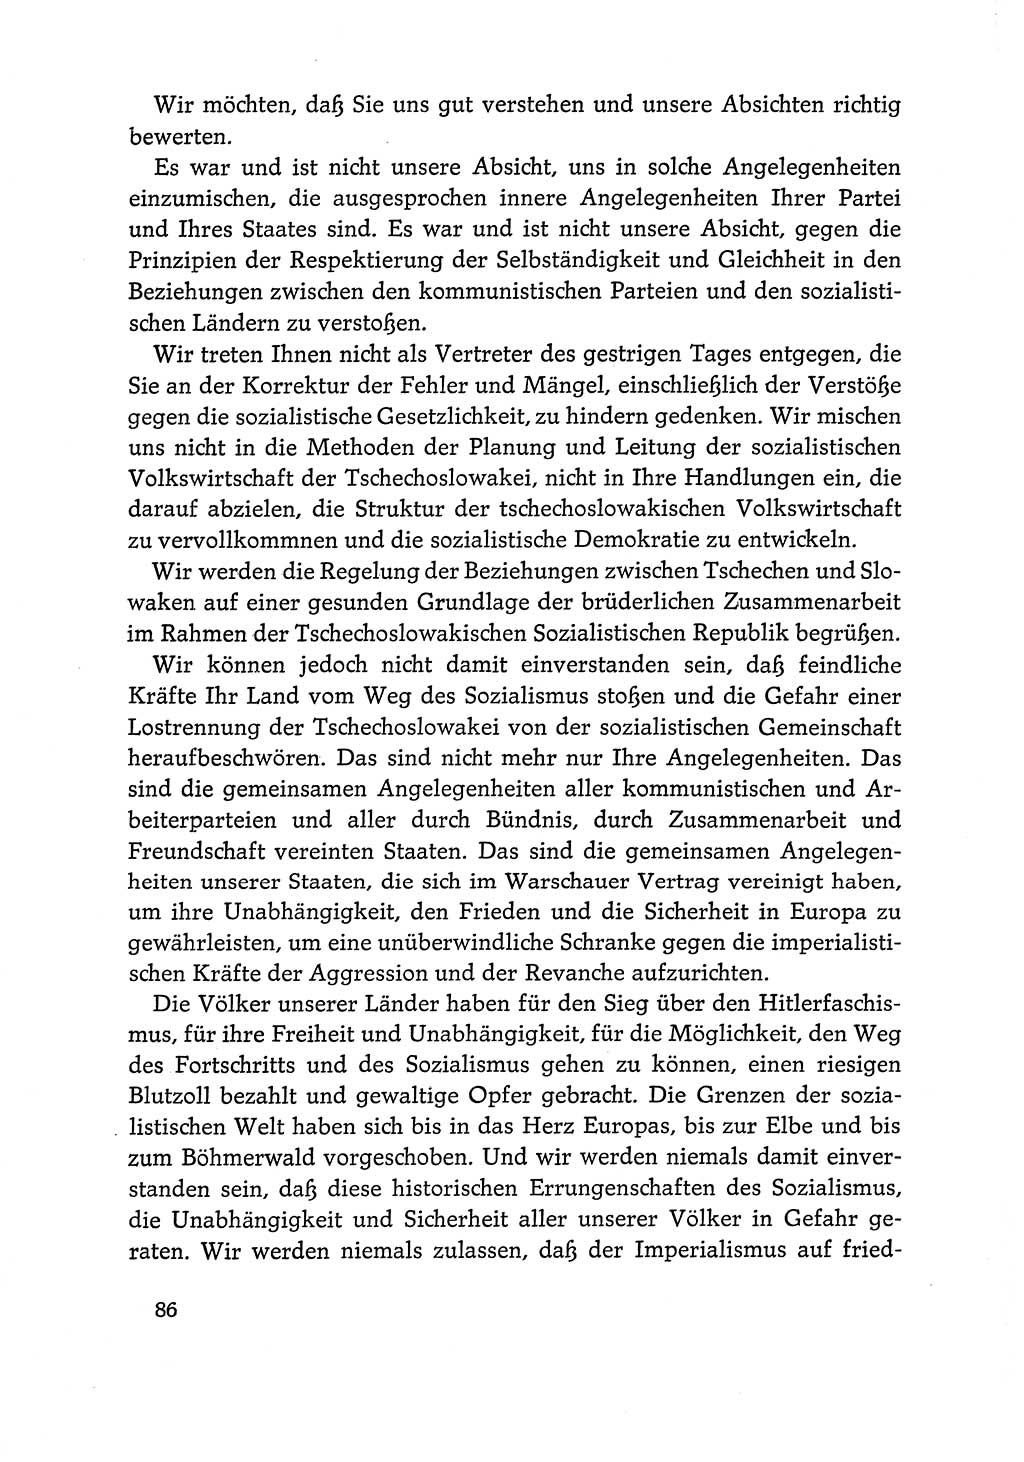 Dokumente der Sozialistischen Einheitspartei Deutschlands (SED) [Deutsche Demokratische Republik (DDR)] 1968-1969, Seite 86 (Dok. SED DDR 1968-1969, S. 86)